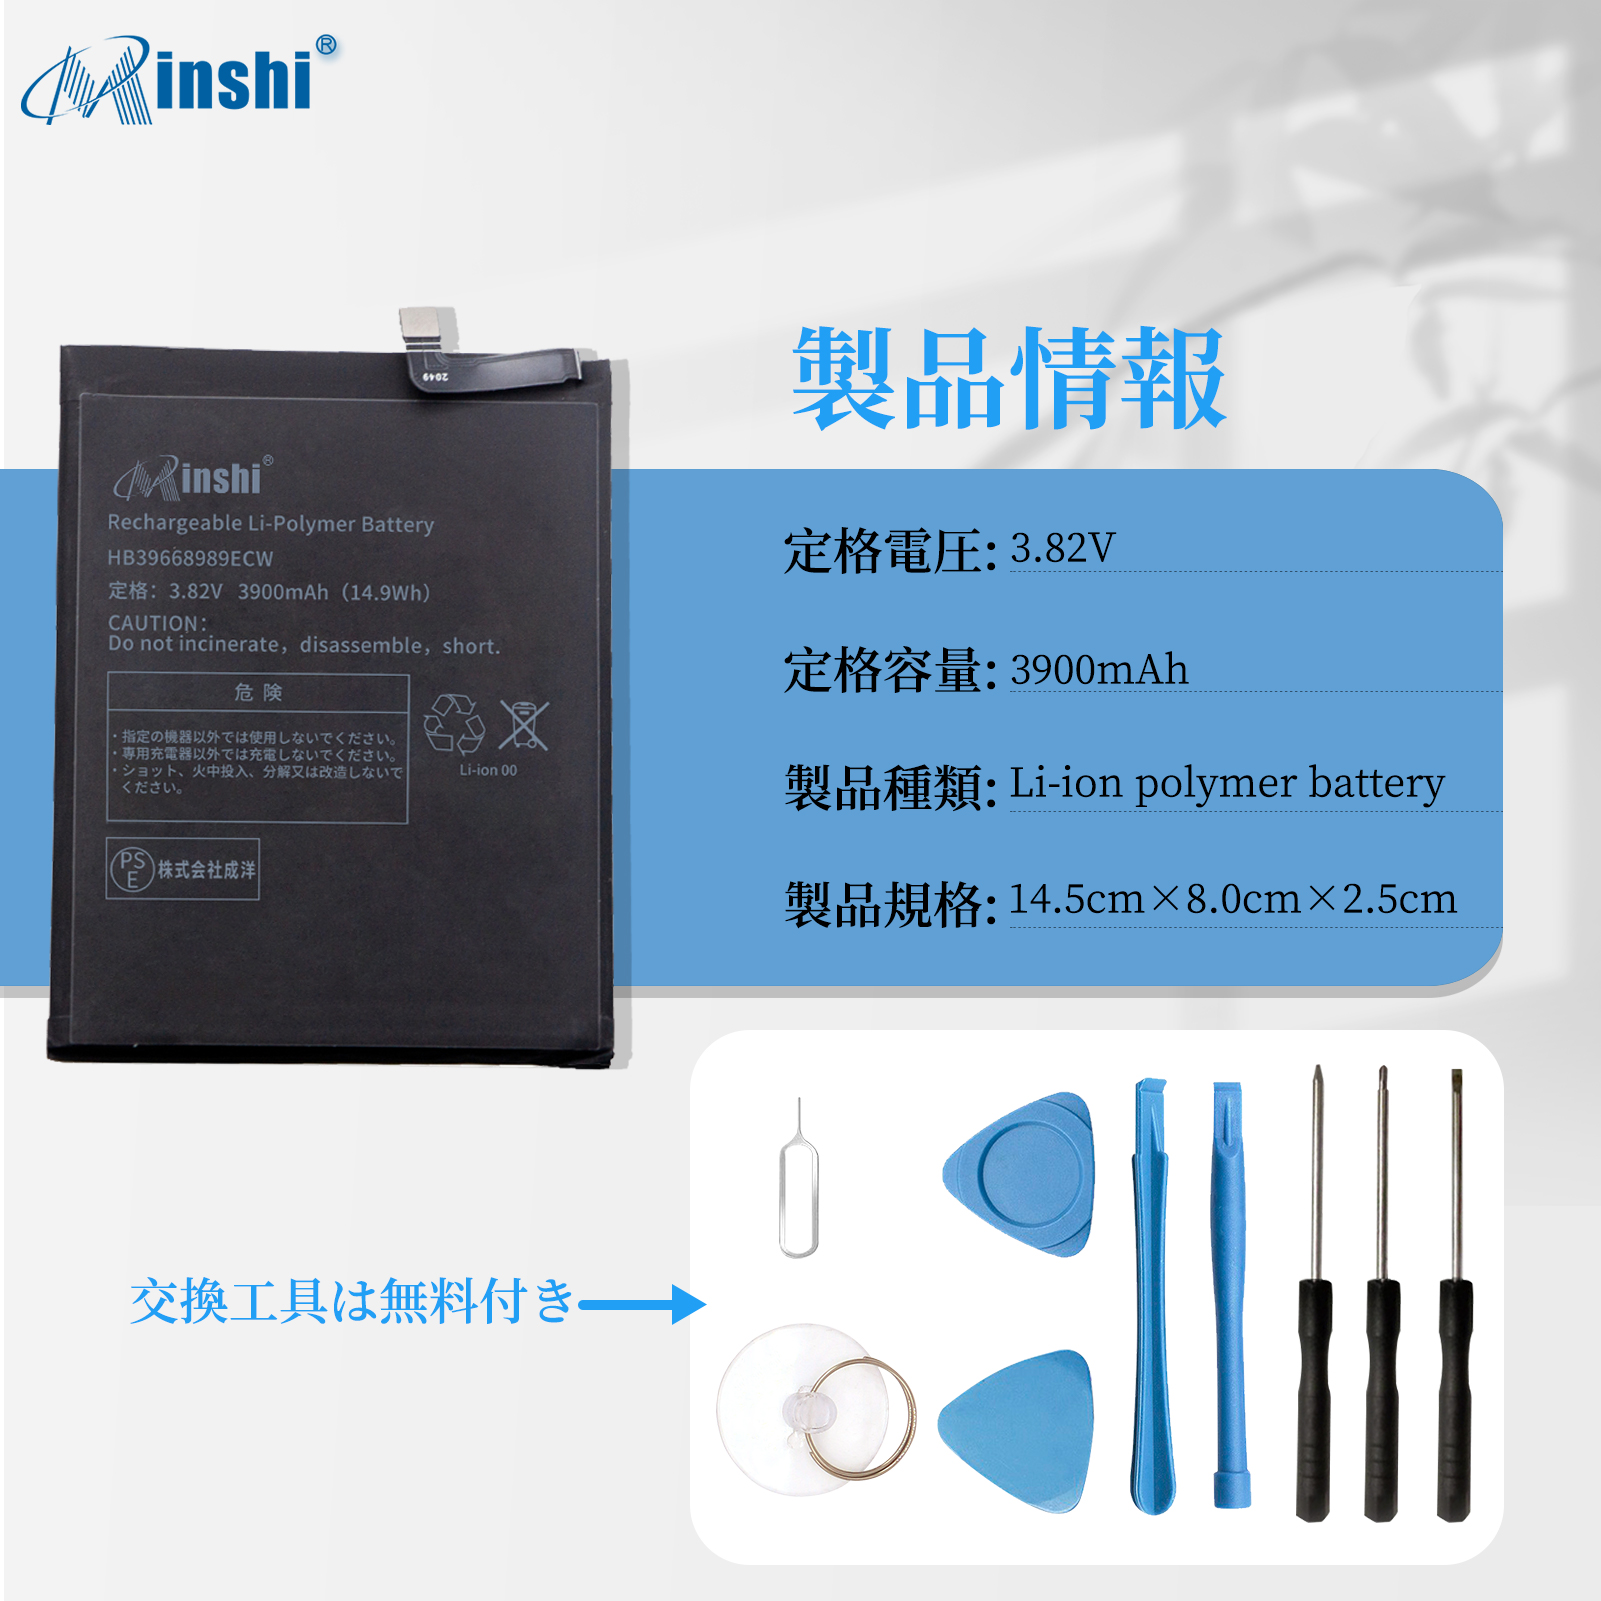 minshi】Huawei Mate 9 互換電池 3.82V 3900mAh 対応用 バッテリー PSE